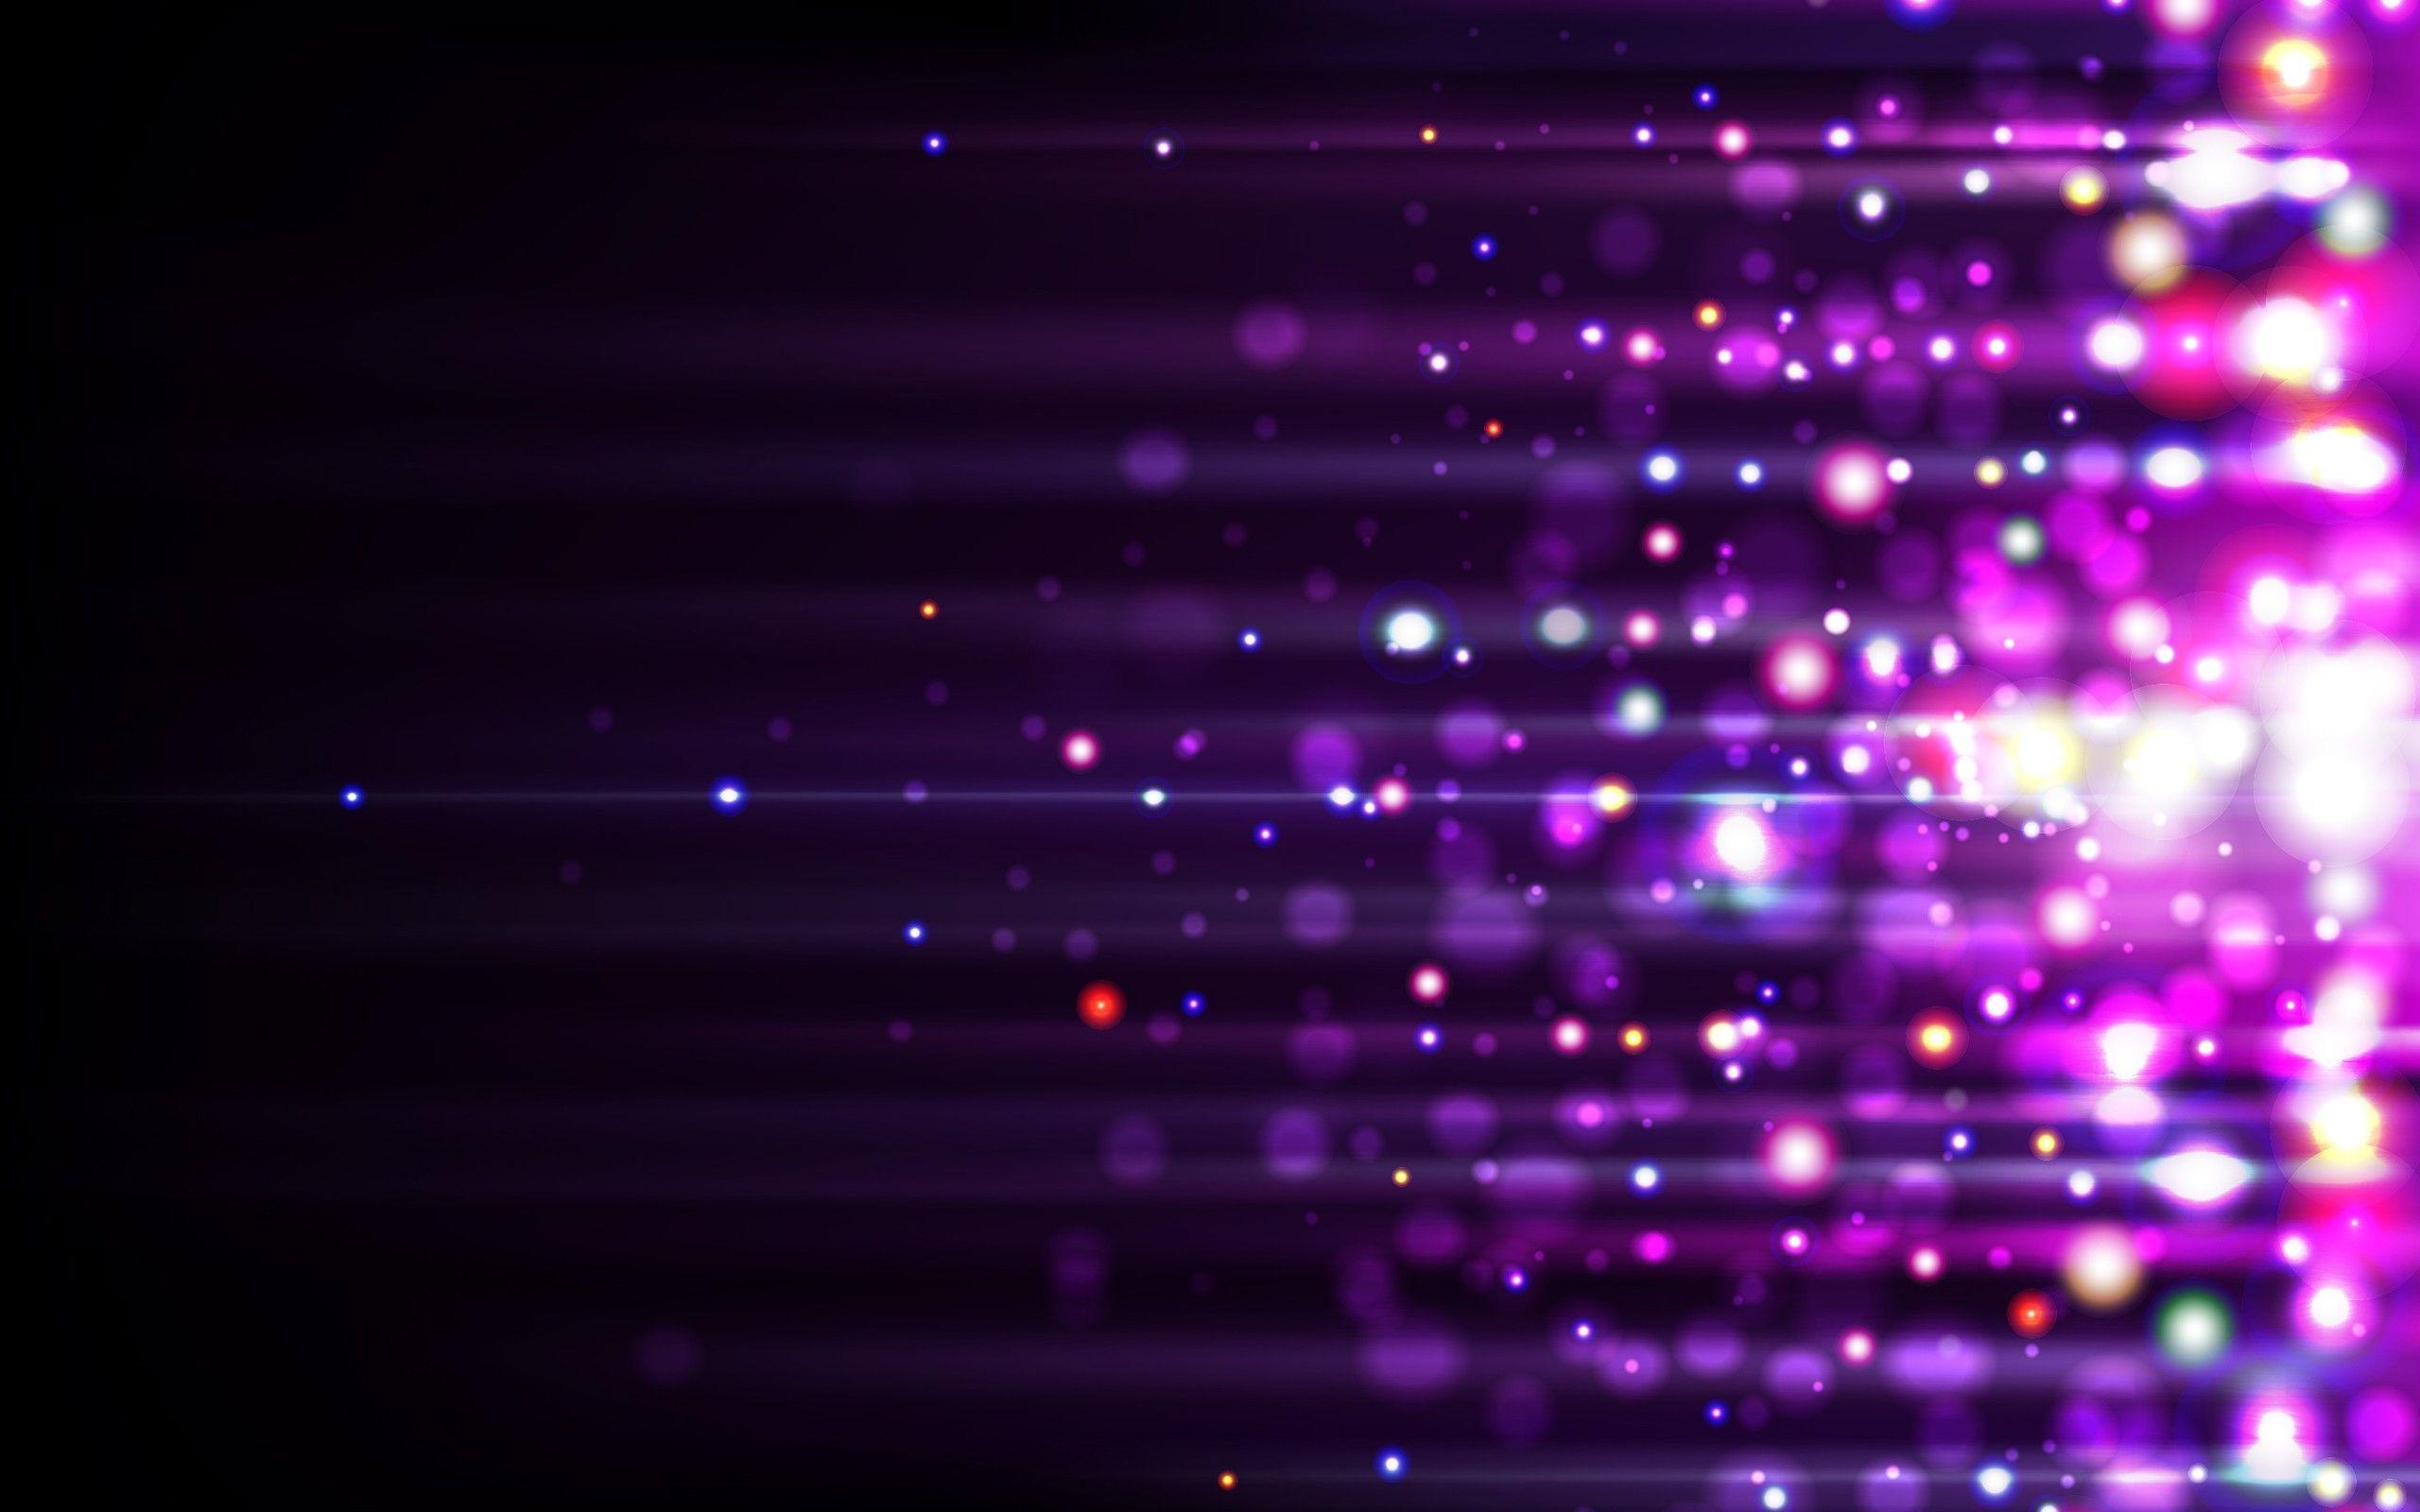 تصویر زمینه از ذرات نورانی با لکه های درخشان رنگارنگ در زمینه مشکی در قالب های رمانتیک